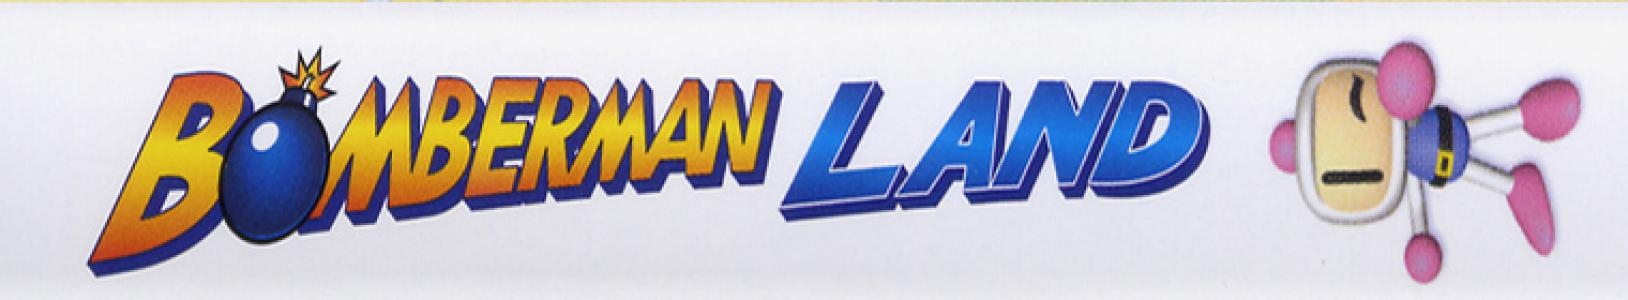 Bomberman Land banner